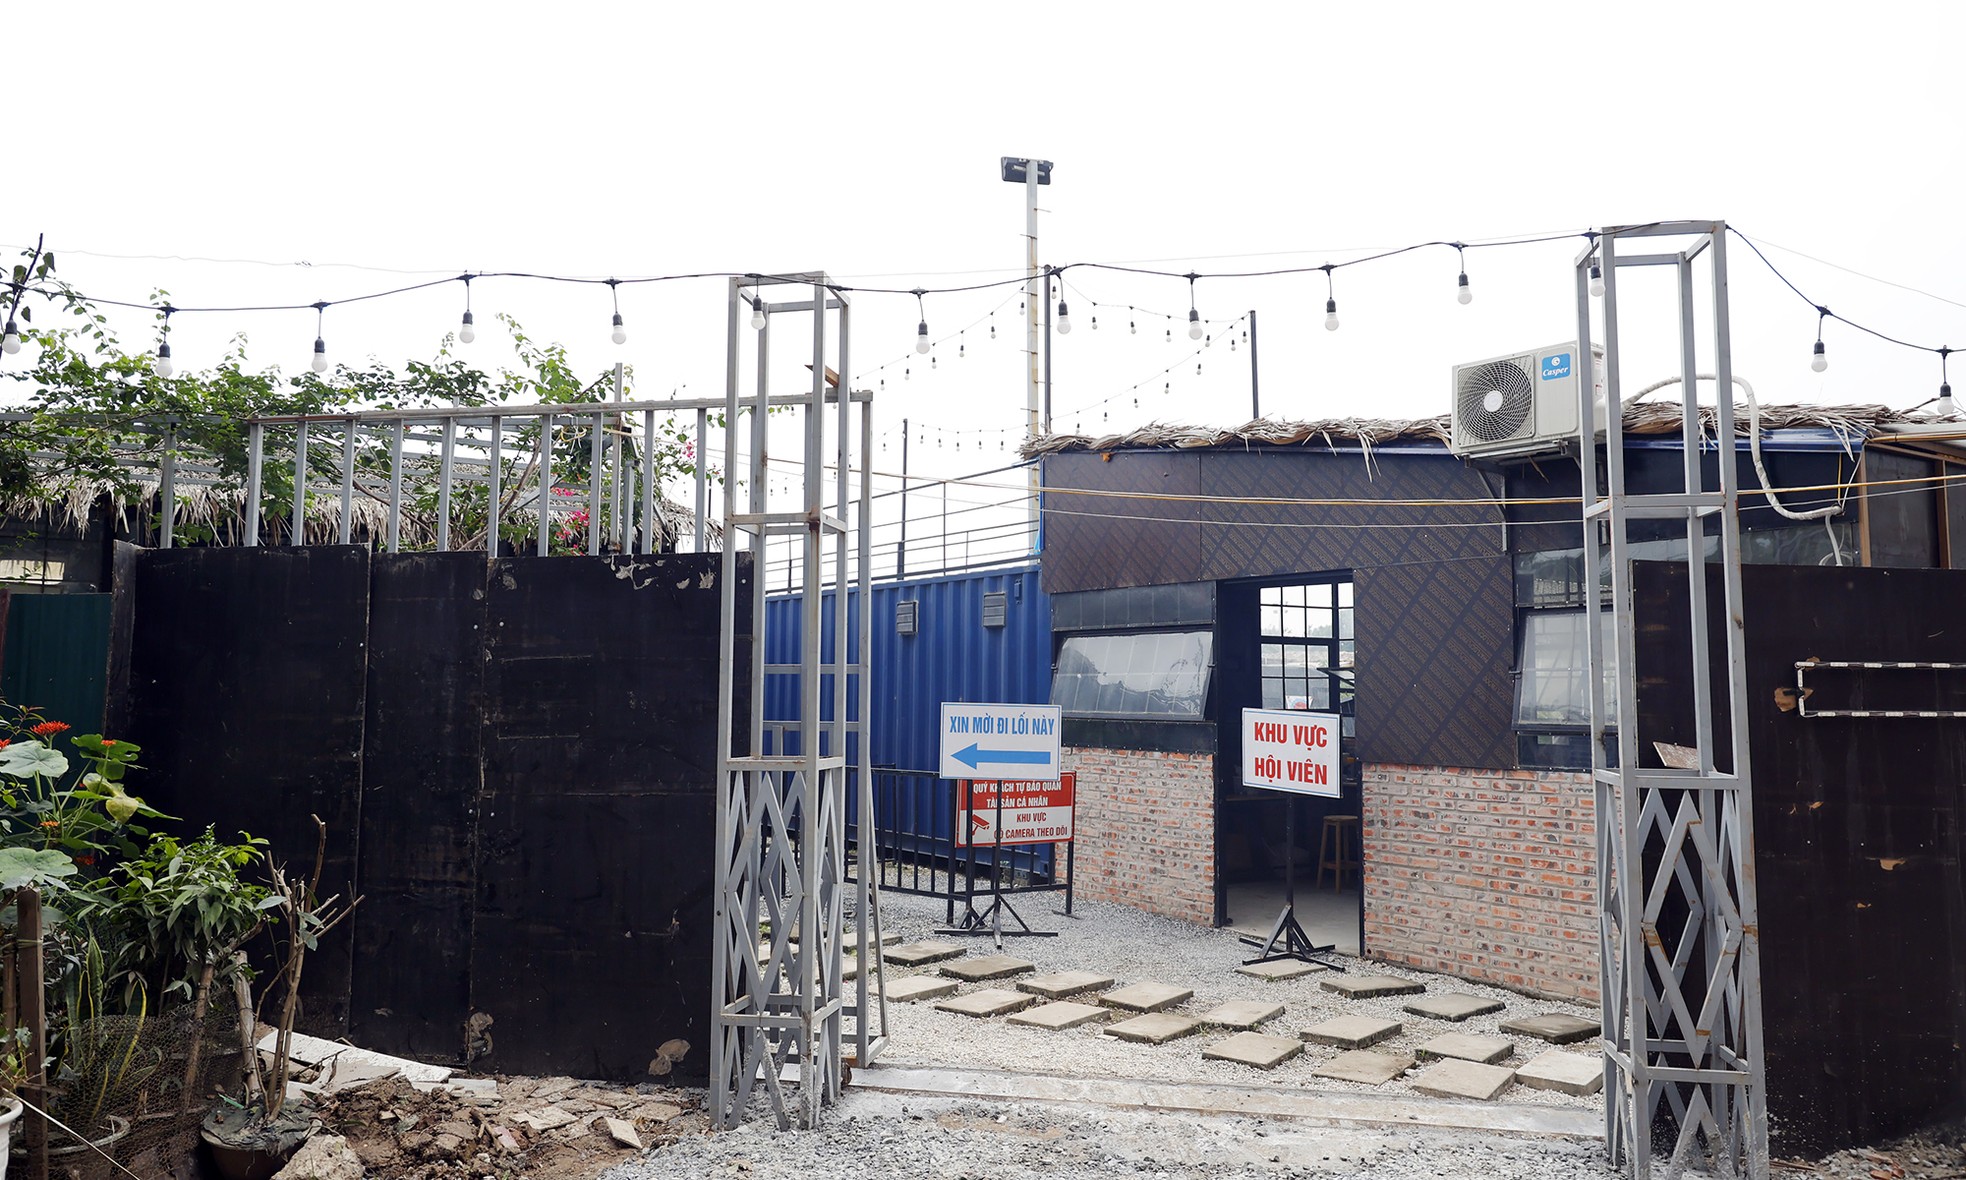 Cận cảnh dự án khu đô thị ở Hà Nội biến tướng thành sân bóng, cho thuê tùm lum - Ảnh 8.